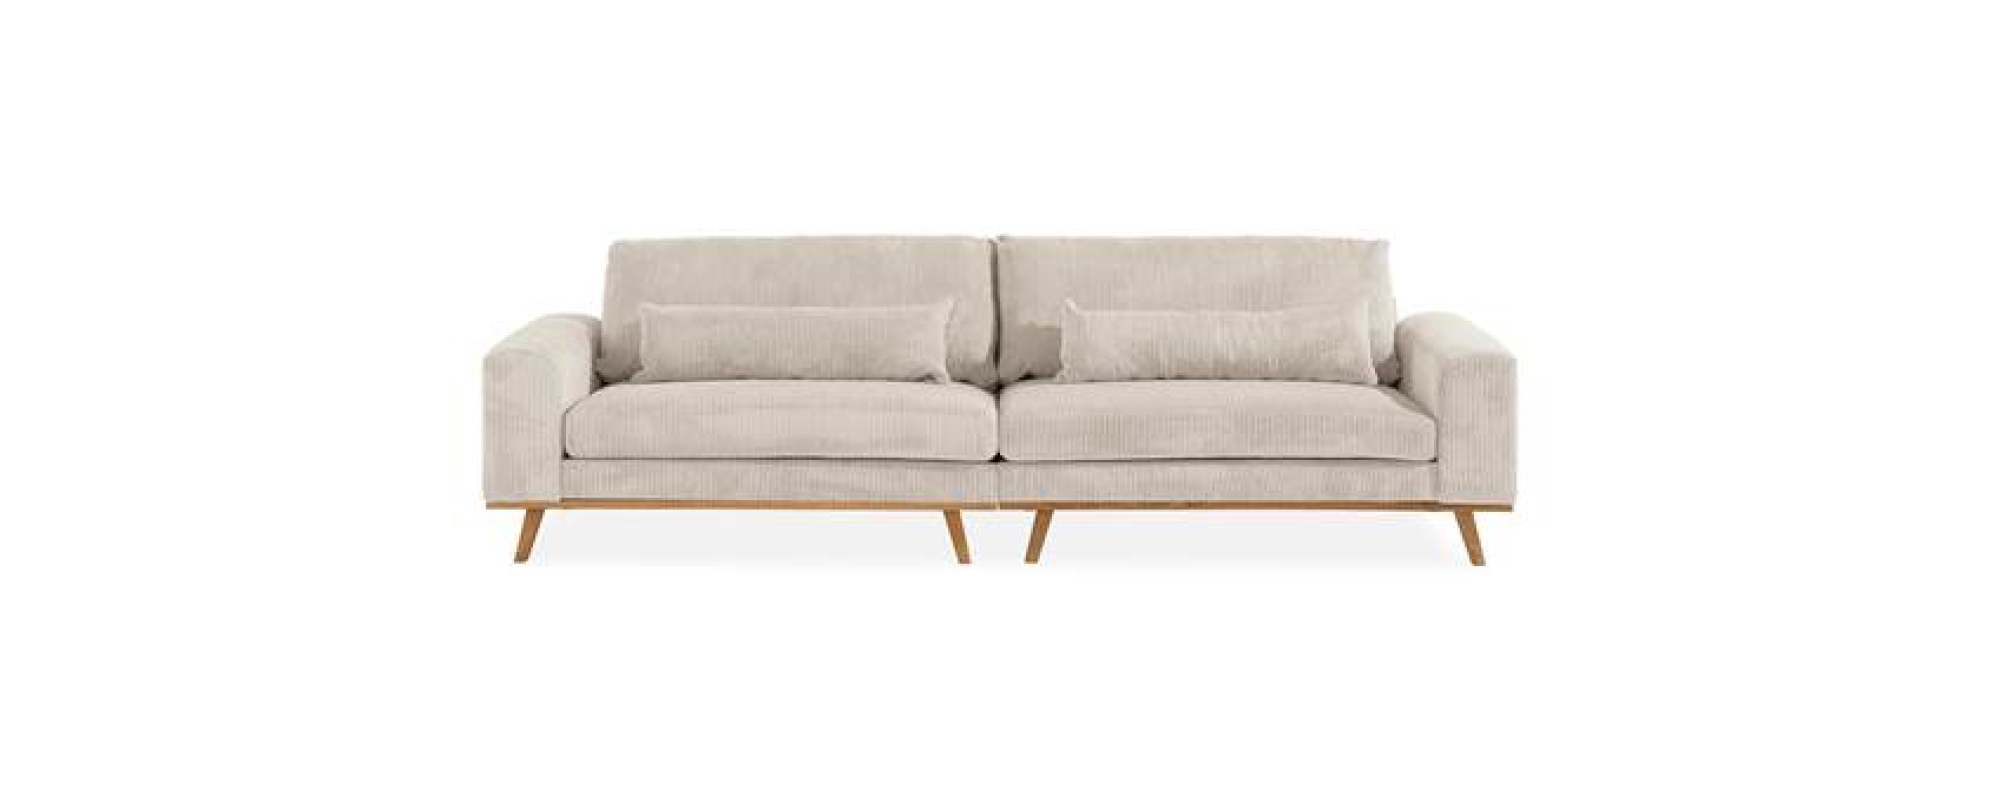 Badekar Foresee efterskrift Sofa | Se stort udvalg til billige priser | My Home Møbler - My Home Møbler